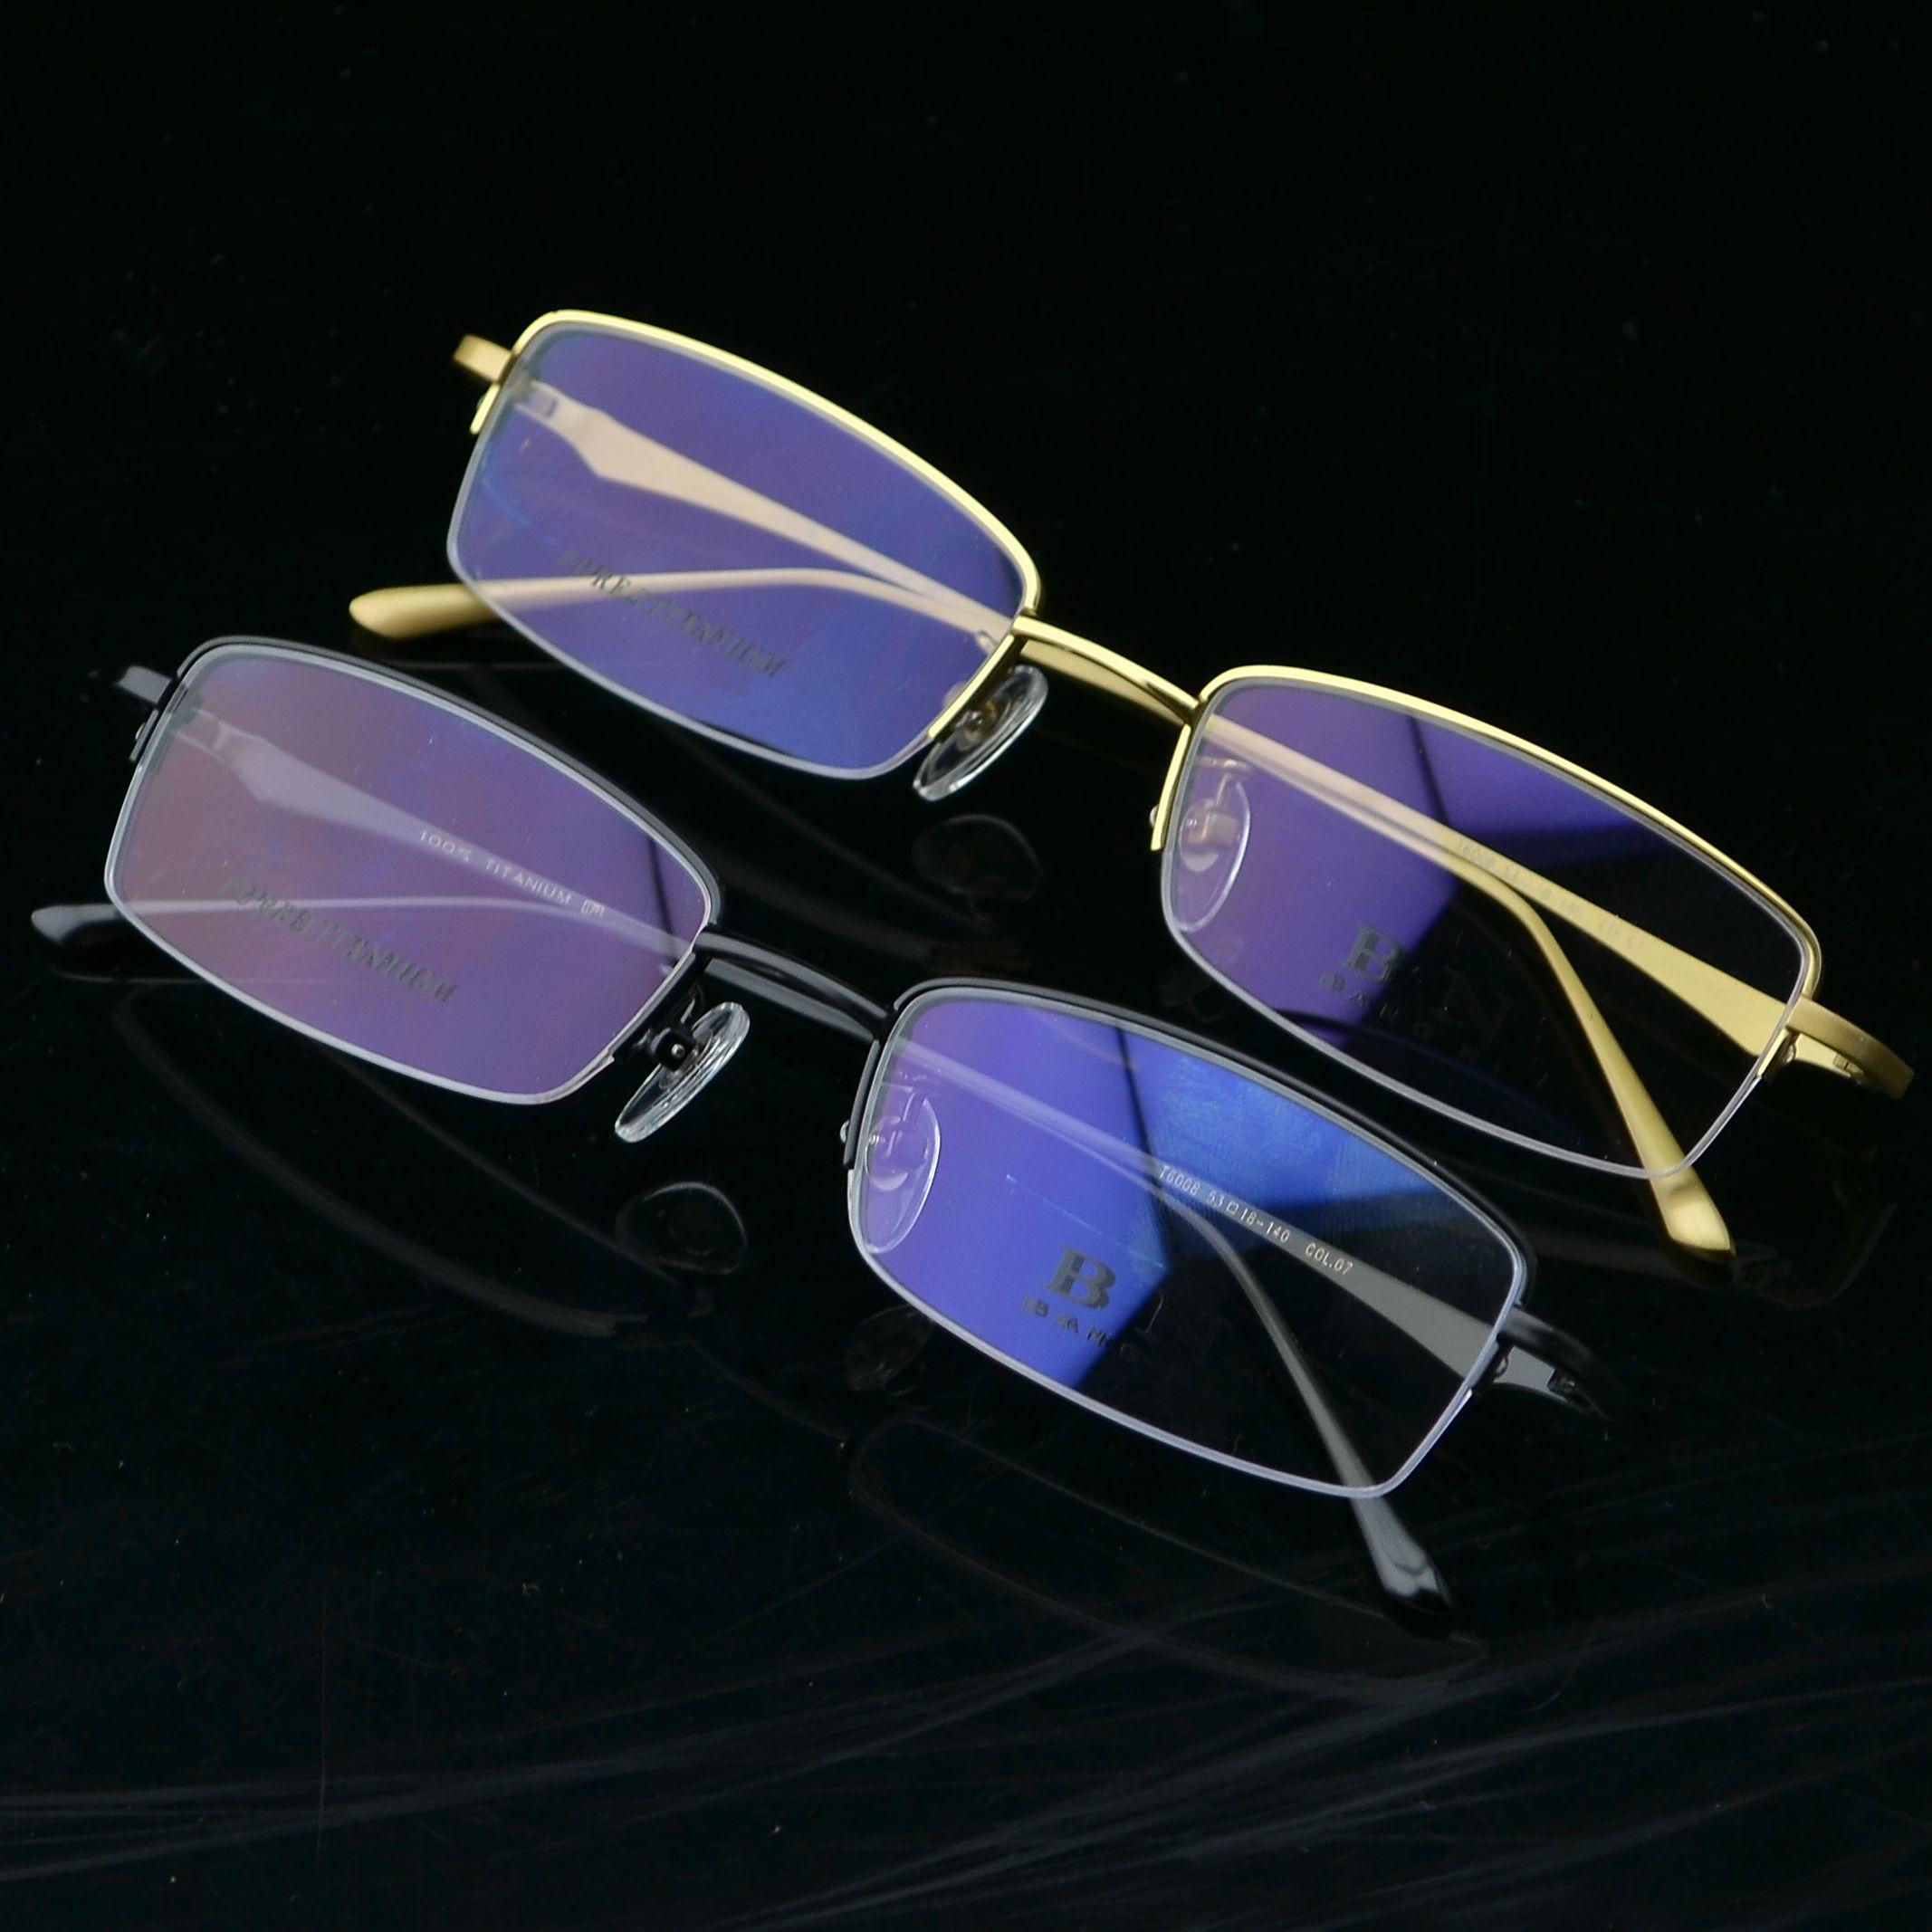 新款邦尼眼镜架100%纯钛架防辐射眼镜配近视包邮半框眼镜架T6008折扣优惠信息